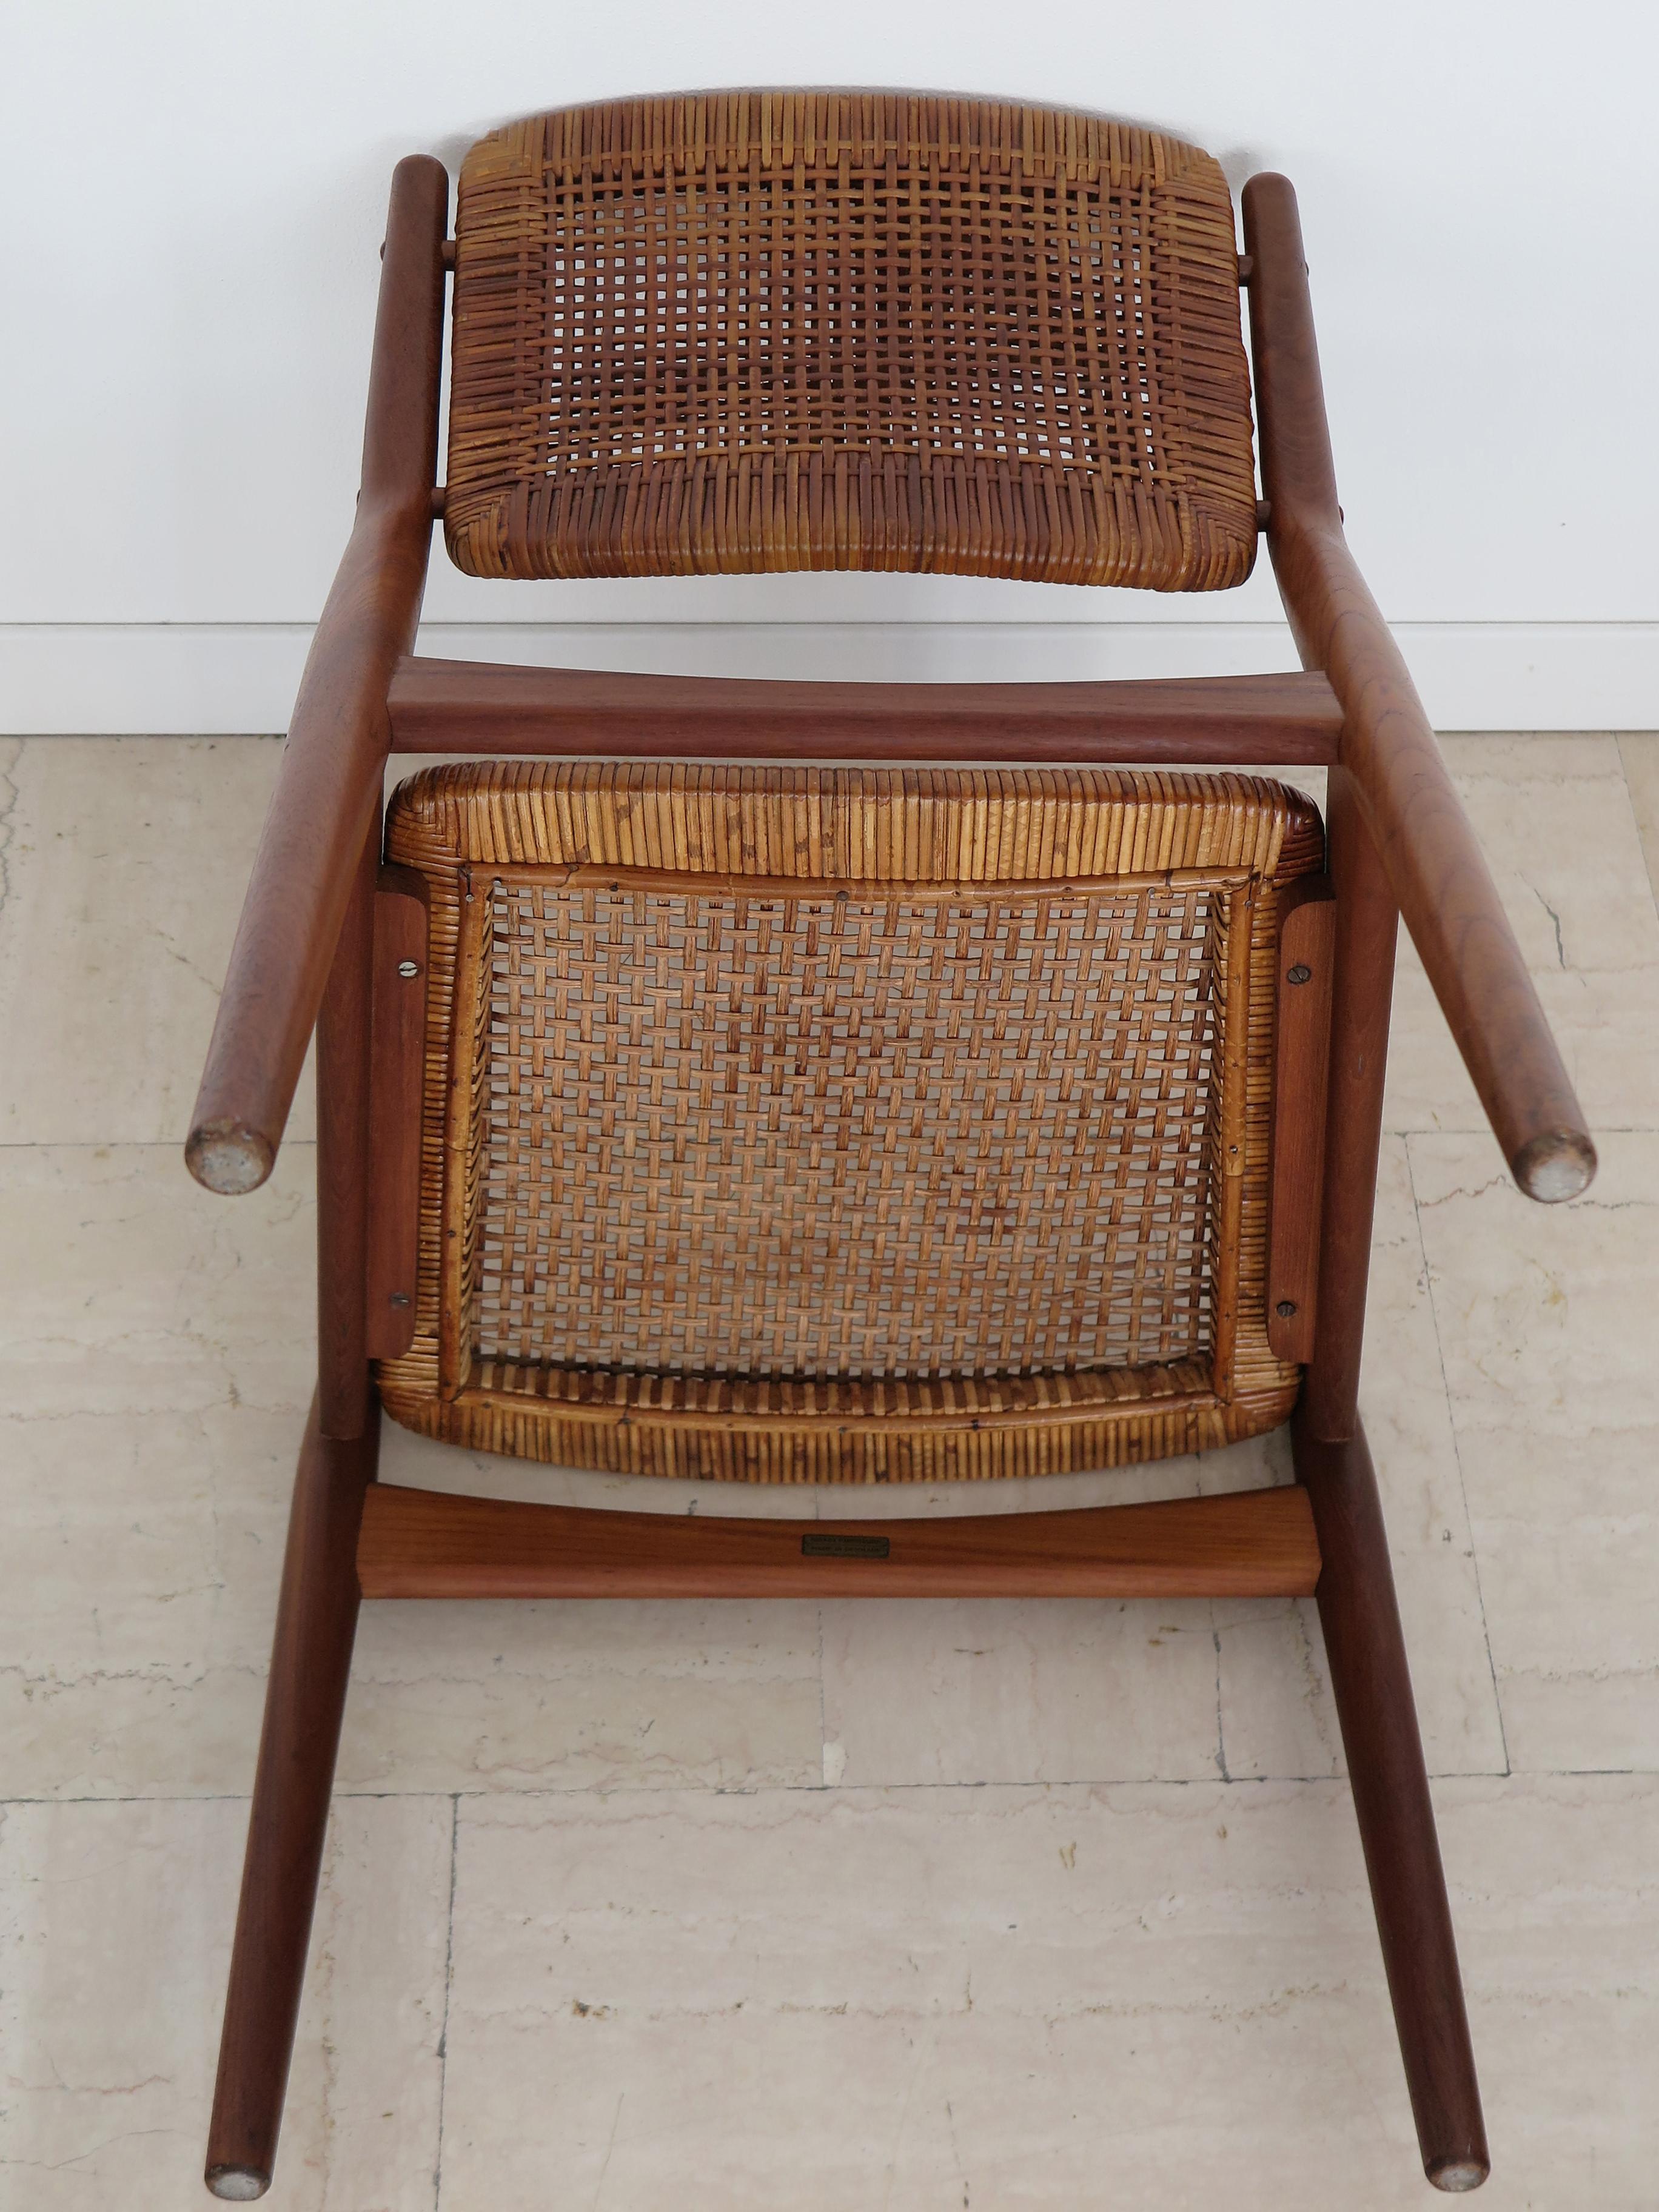 Arne Vodder Midcentury Scandinavian Teak Rattan Chairs for Sibast 1950s For Sale 10